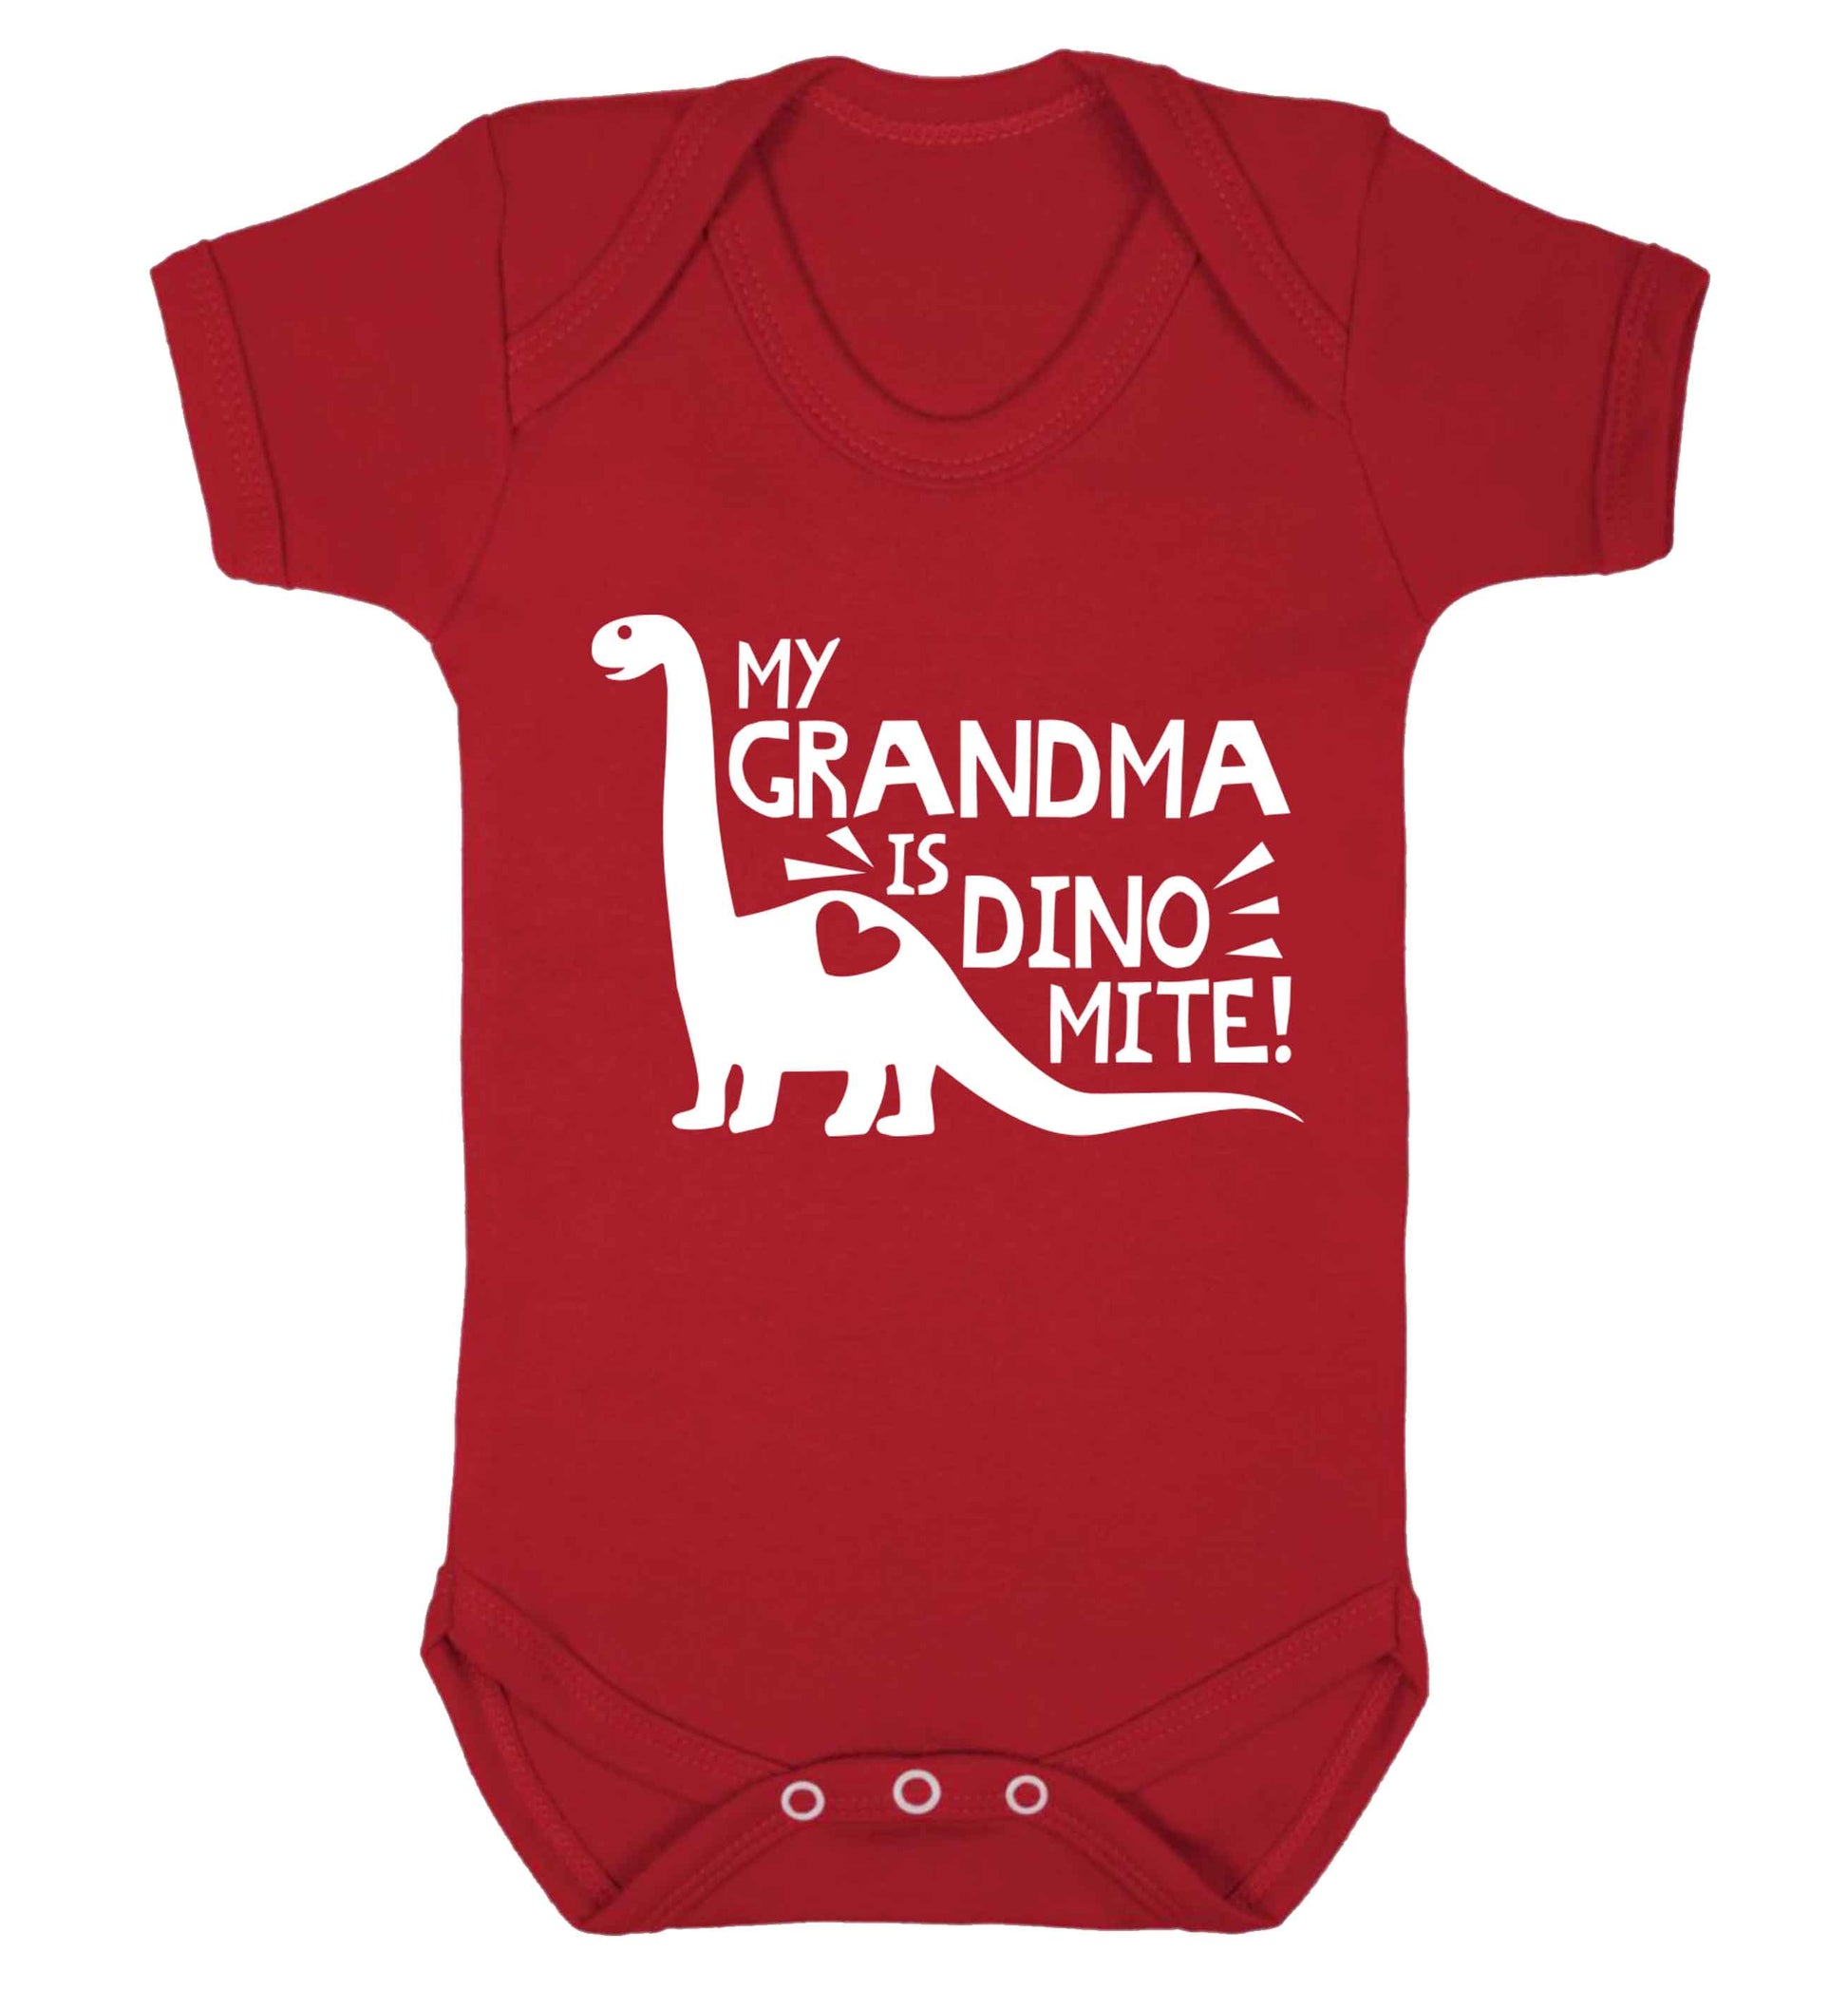 My grandma is dinomite! Baby Vest red 18-24 months